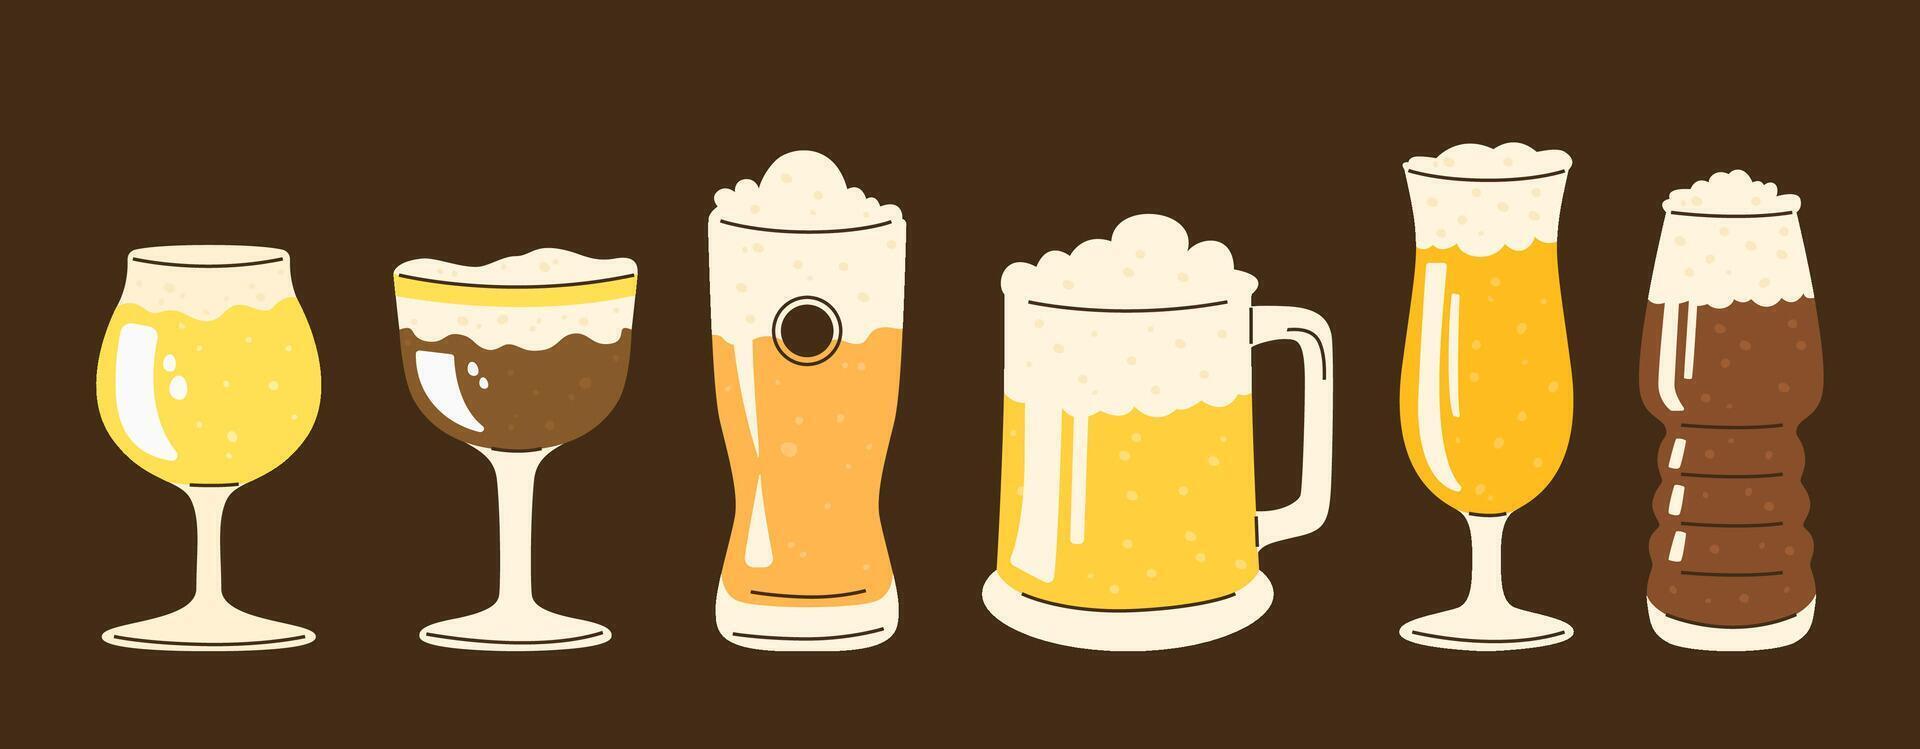 uma conjunto do óculos do vários formas preenchidas com diferente tipos do cerveja. vetor